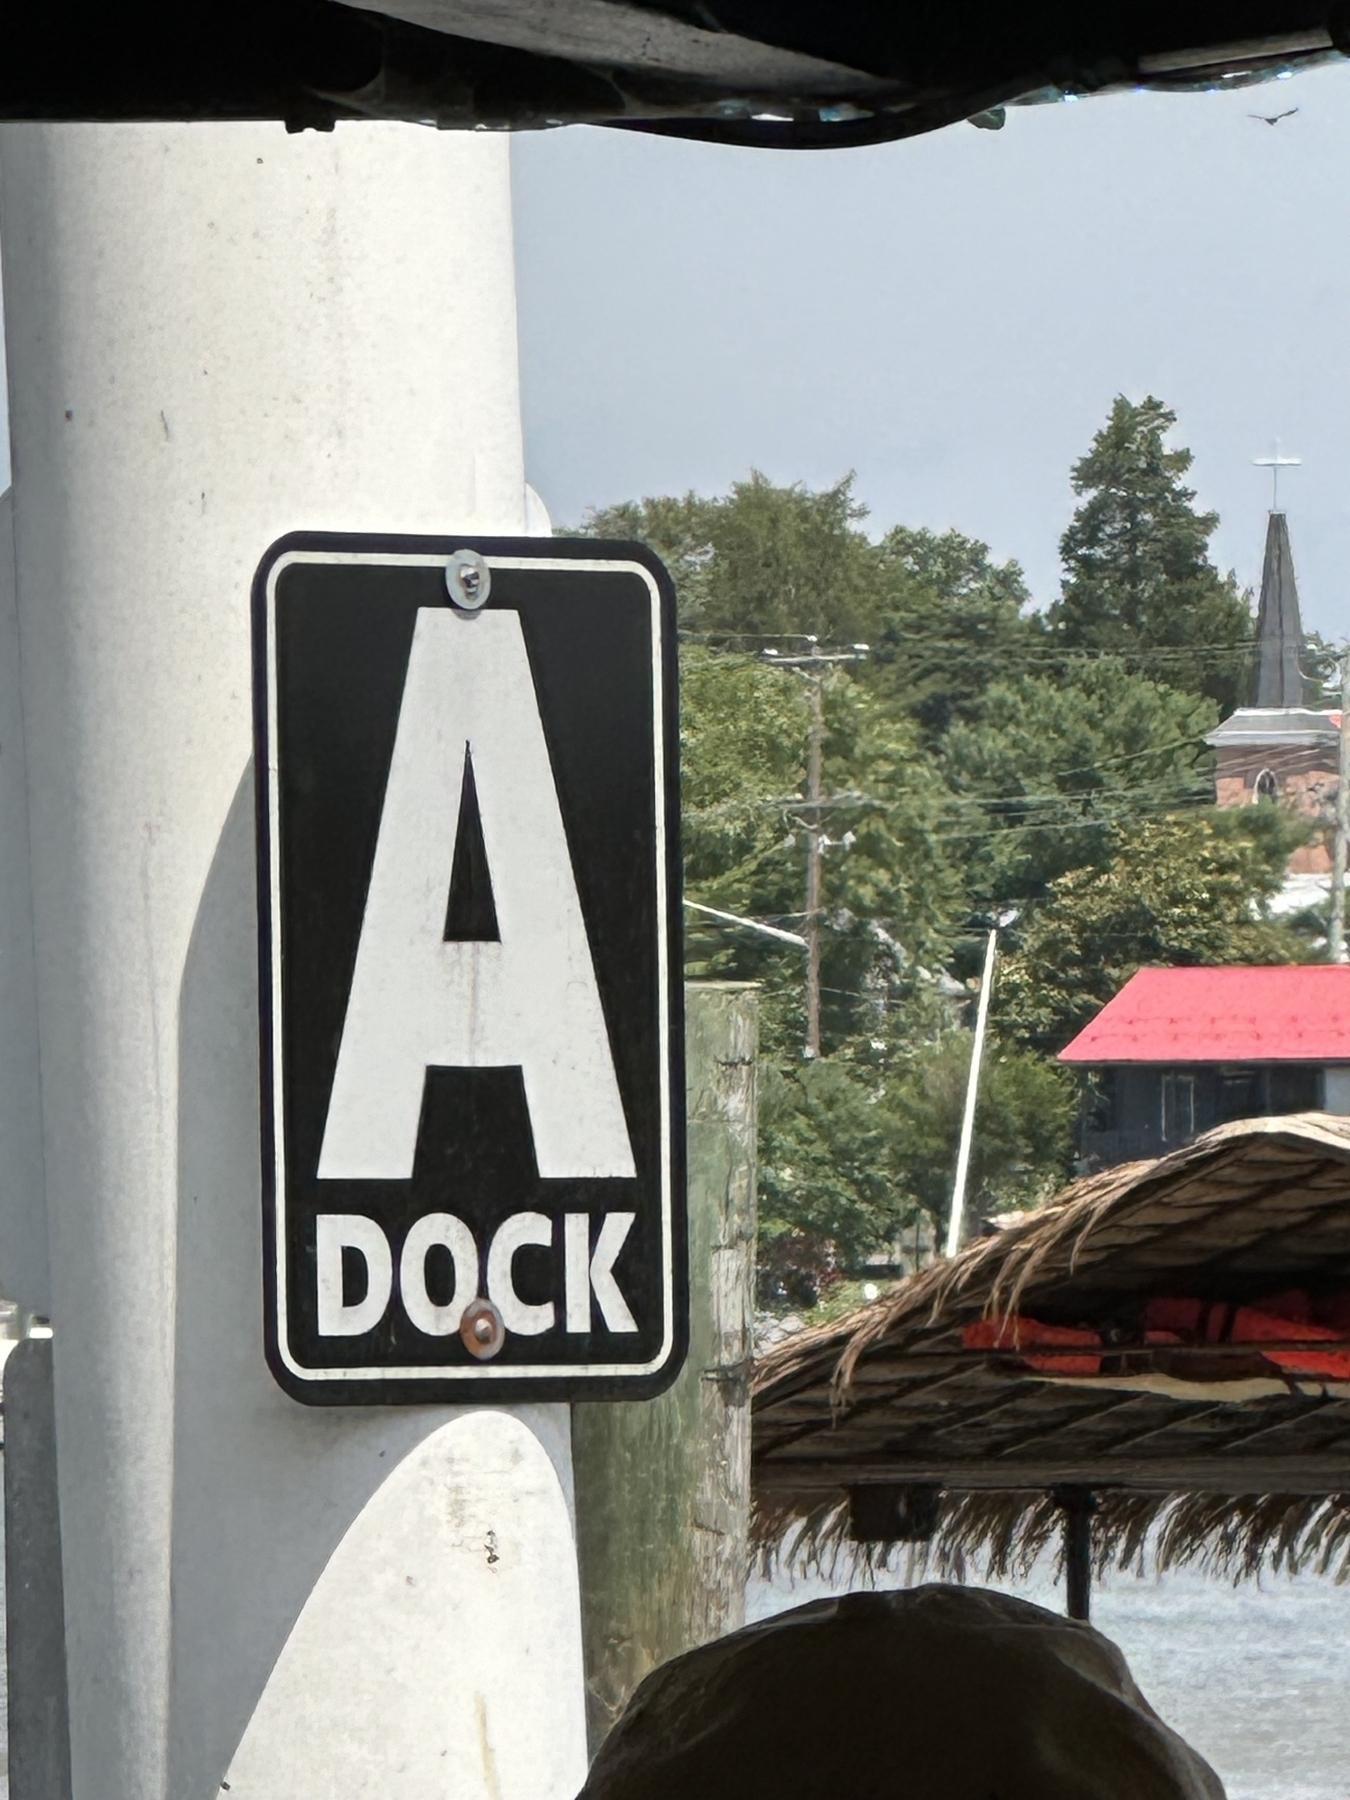 A dock  